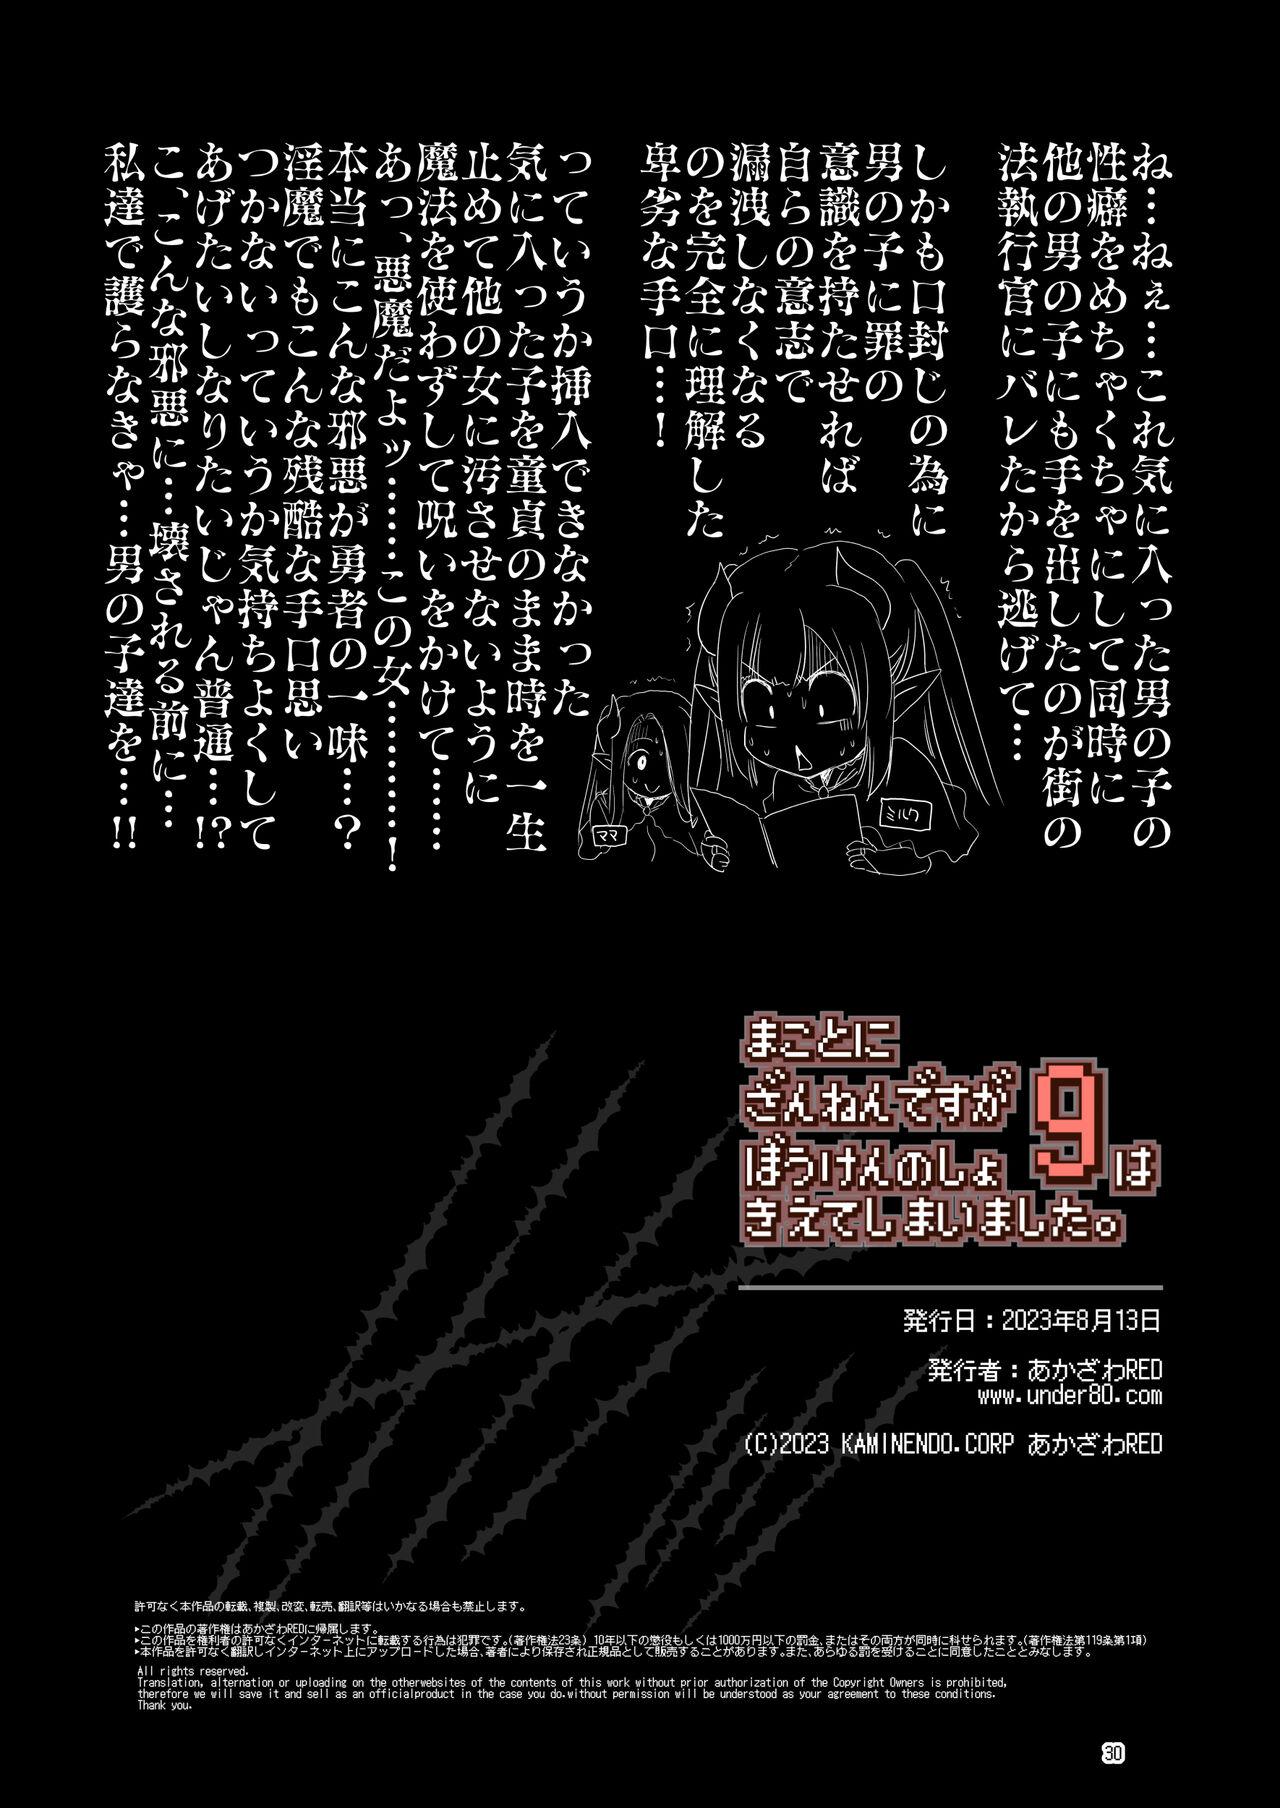 Makotoni Zannen desu ga Bouken no Sho 9 wa Kiete Shimaimashita. 29